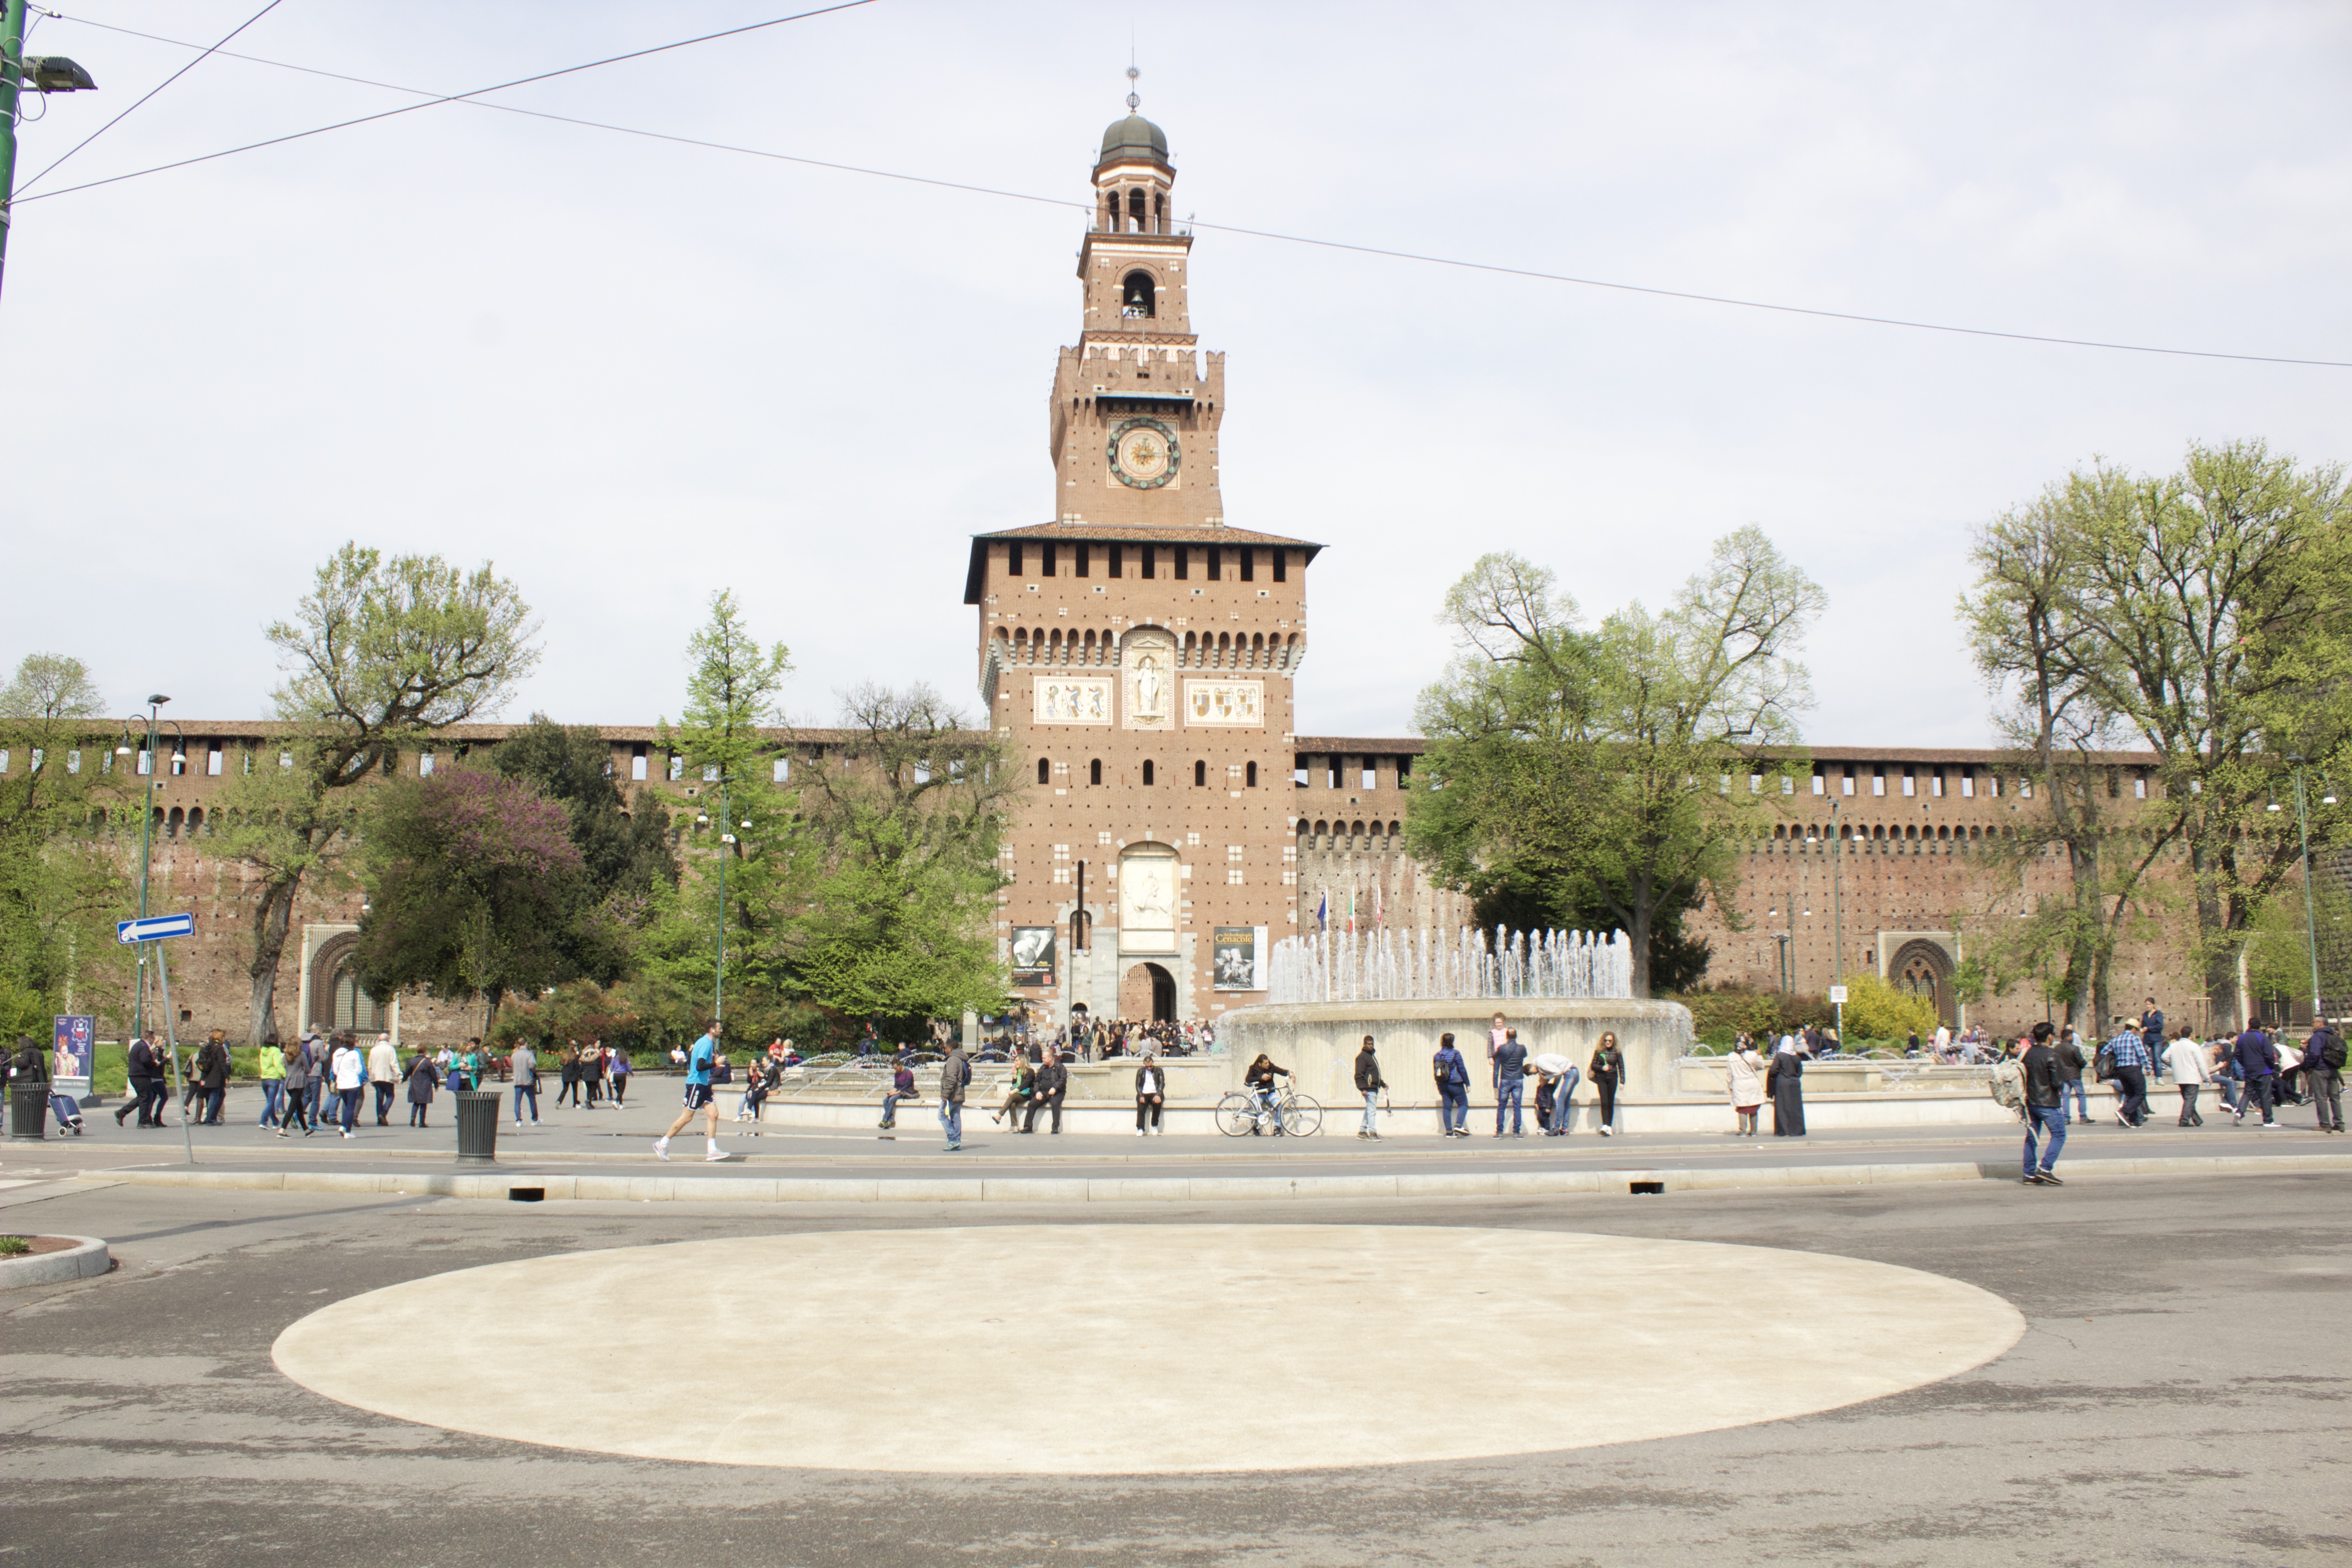 The Castello Sforza